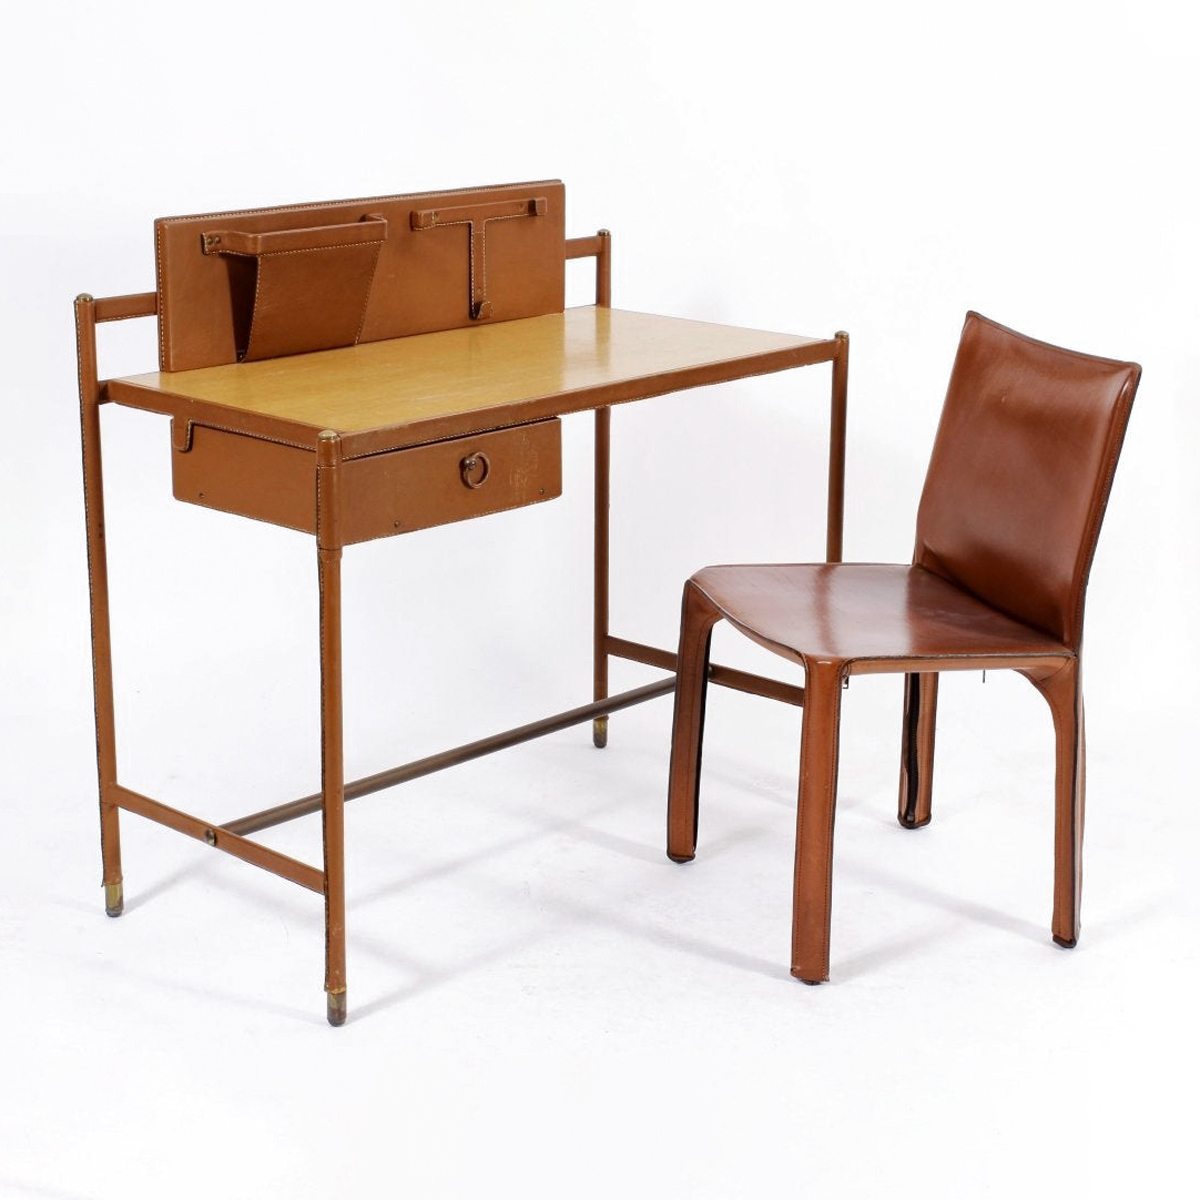 Modernist desk for Hermes